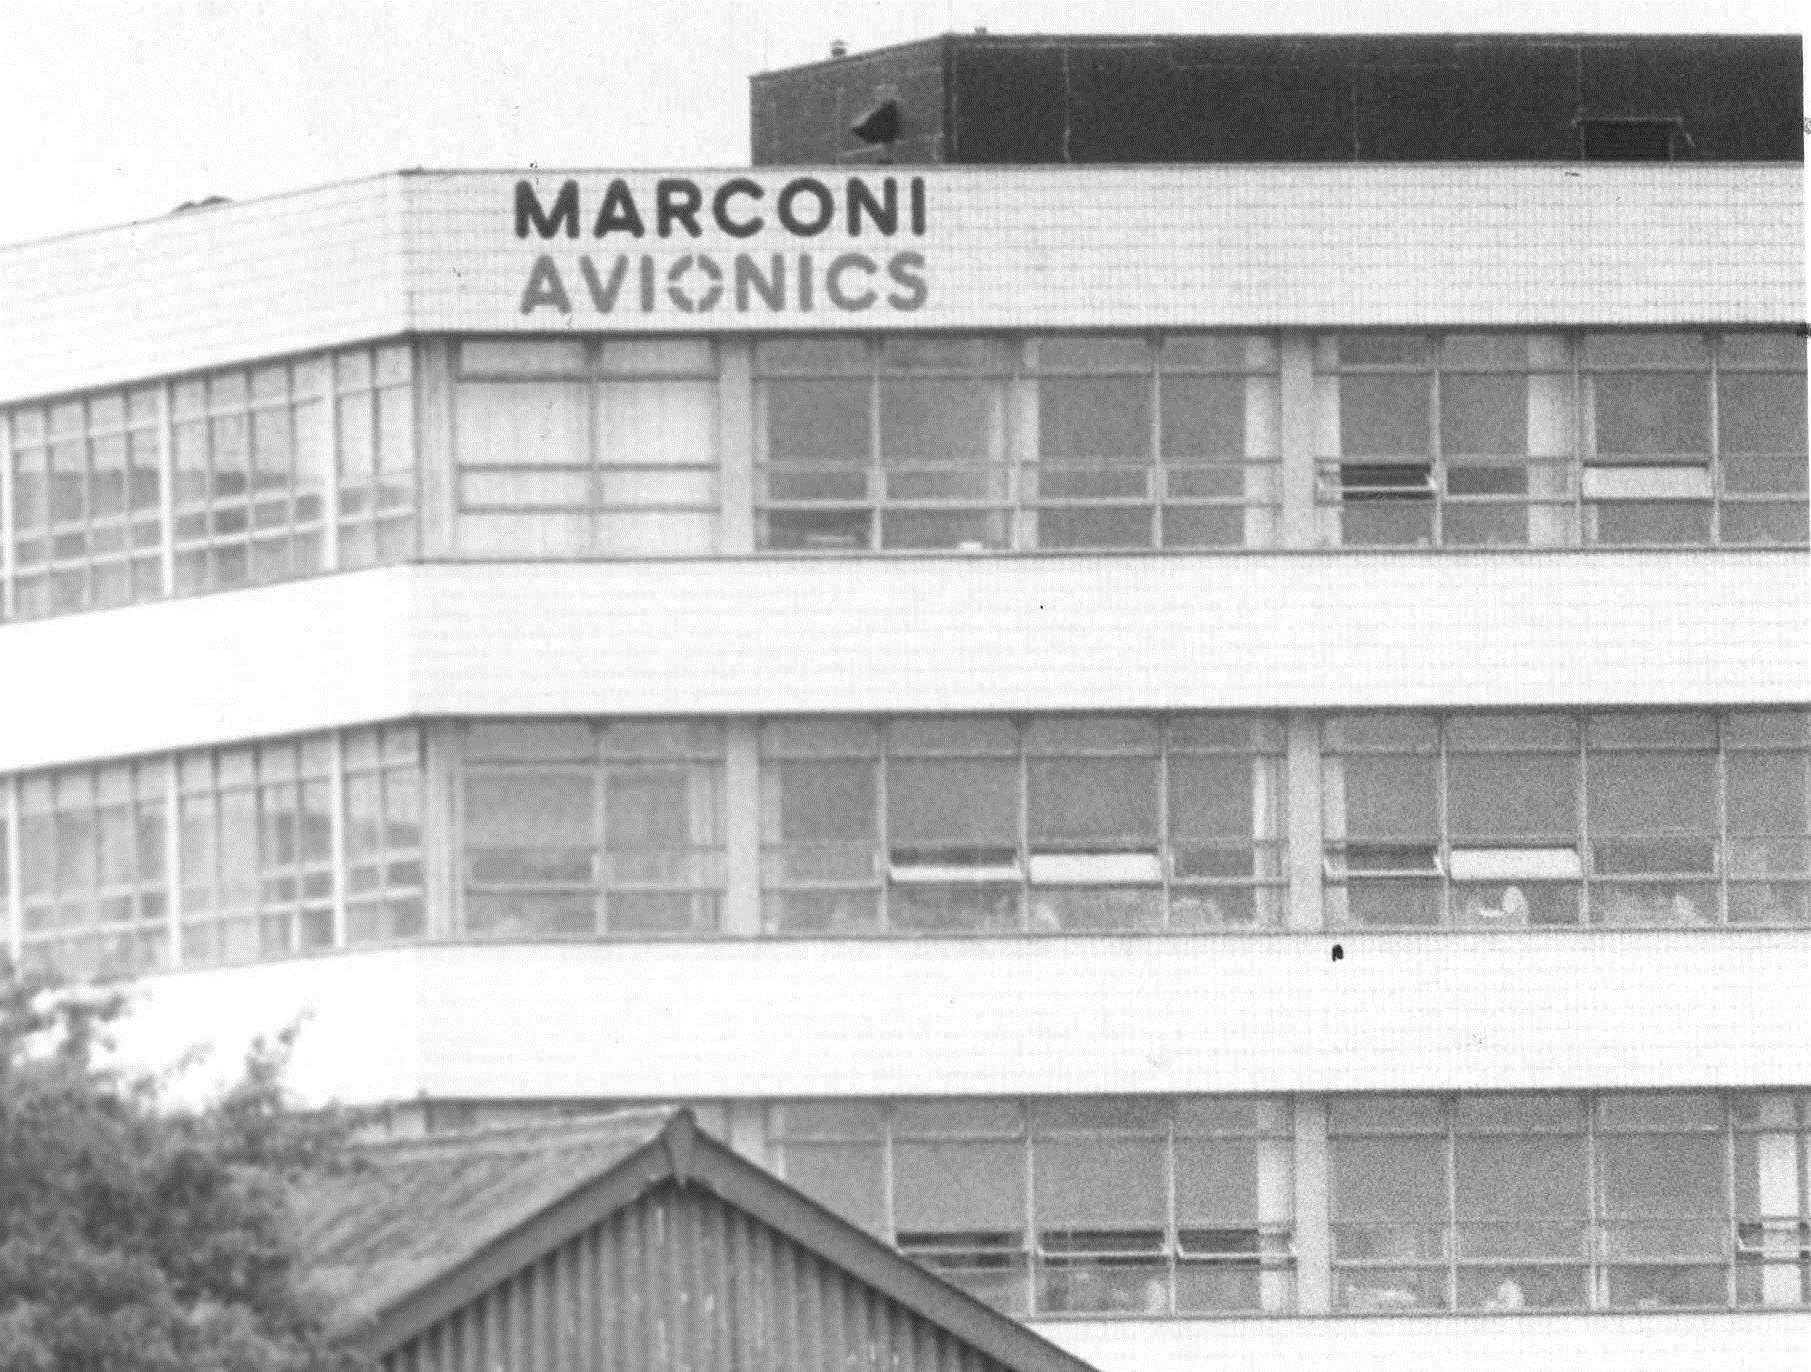 Marconi Avionics in Rochester in 1980